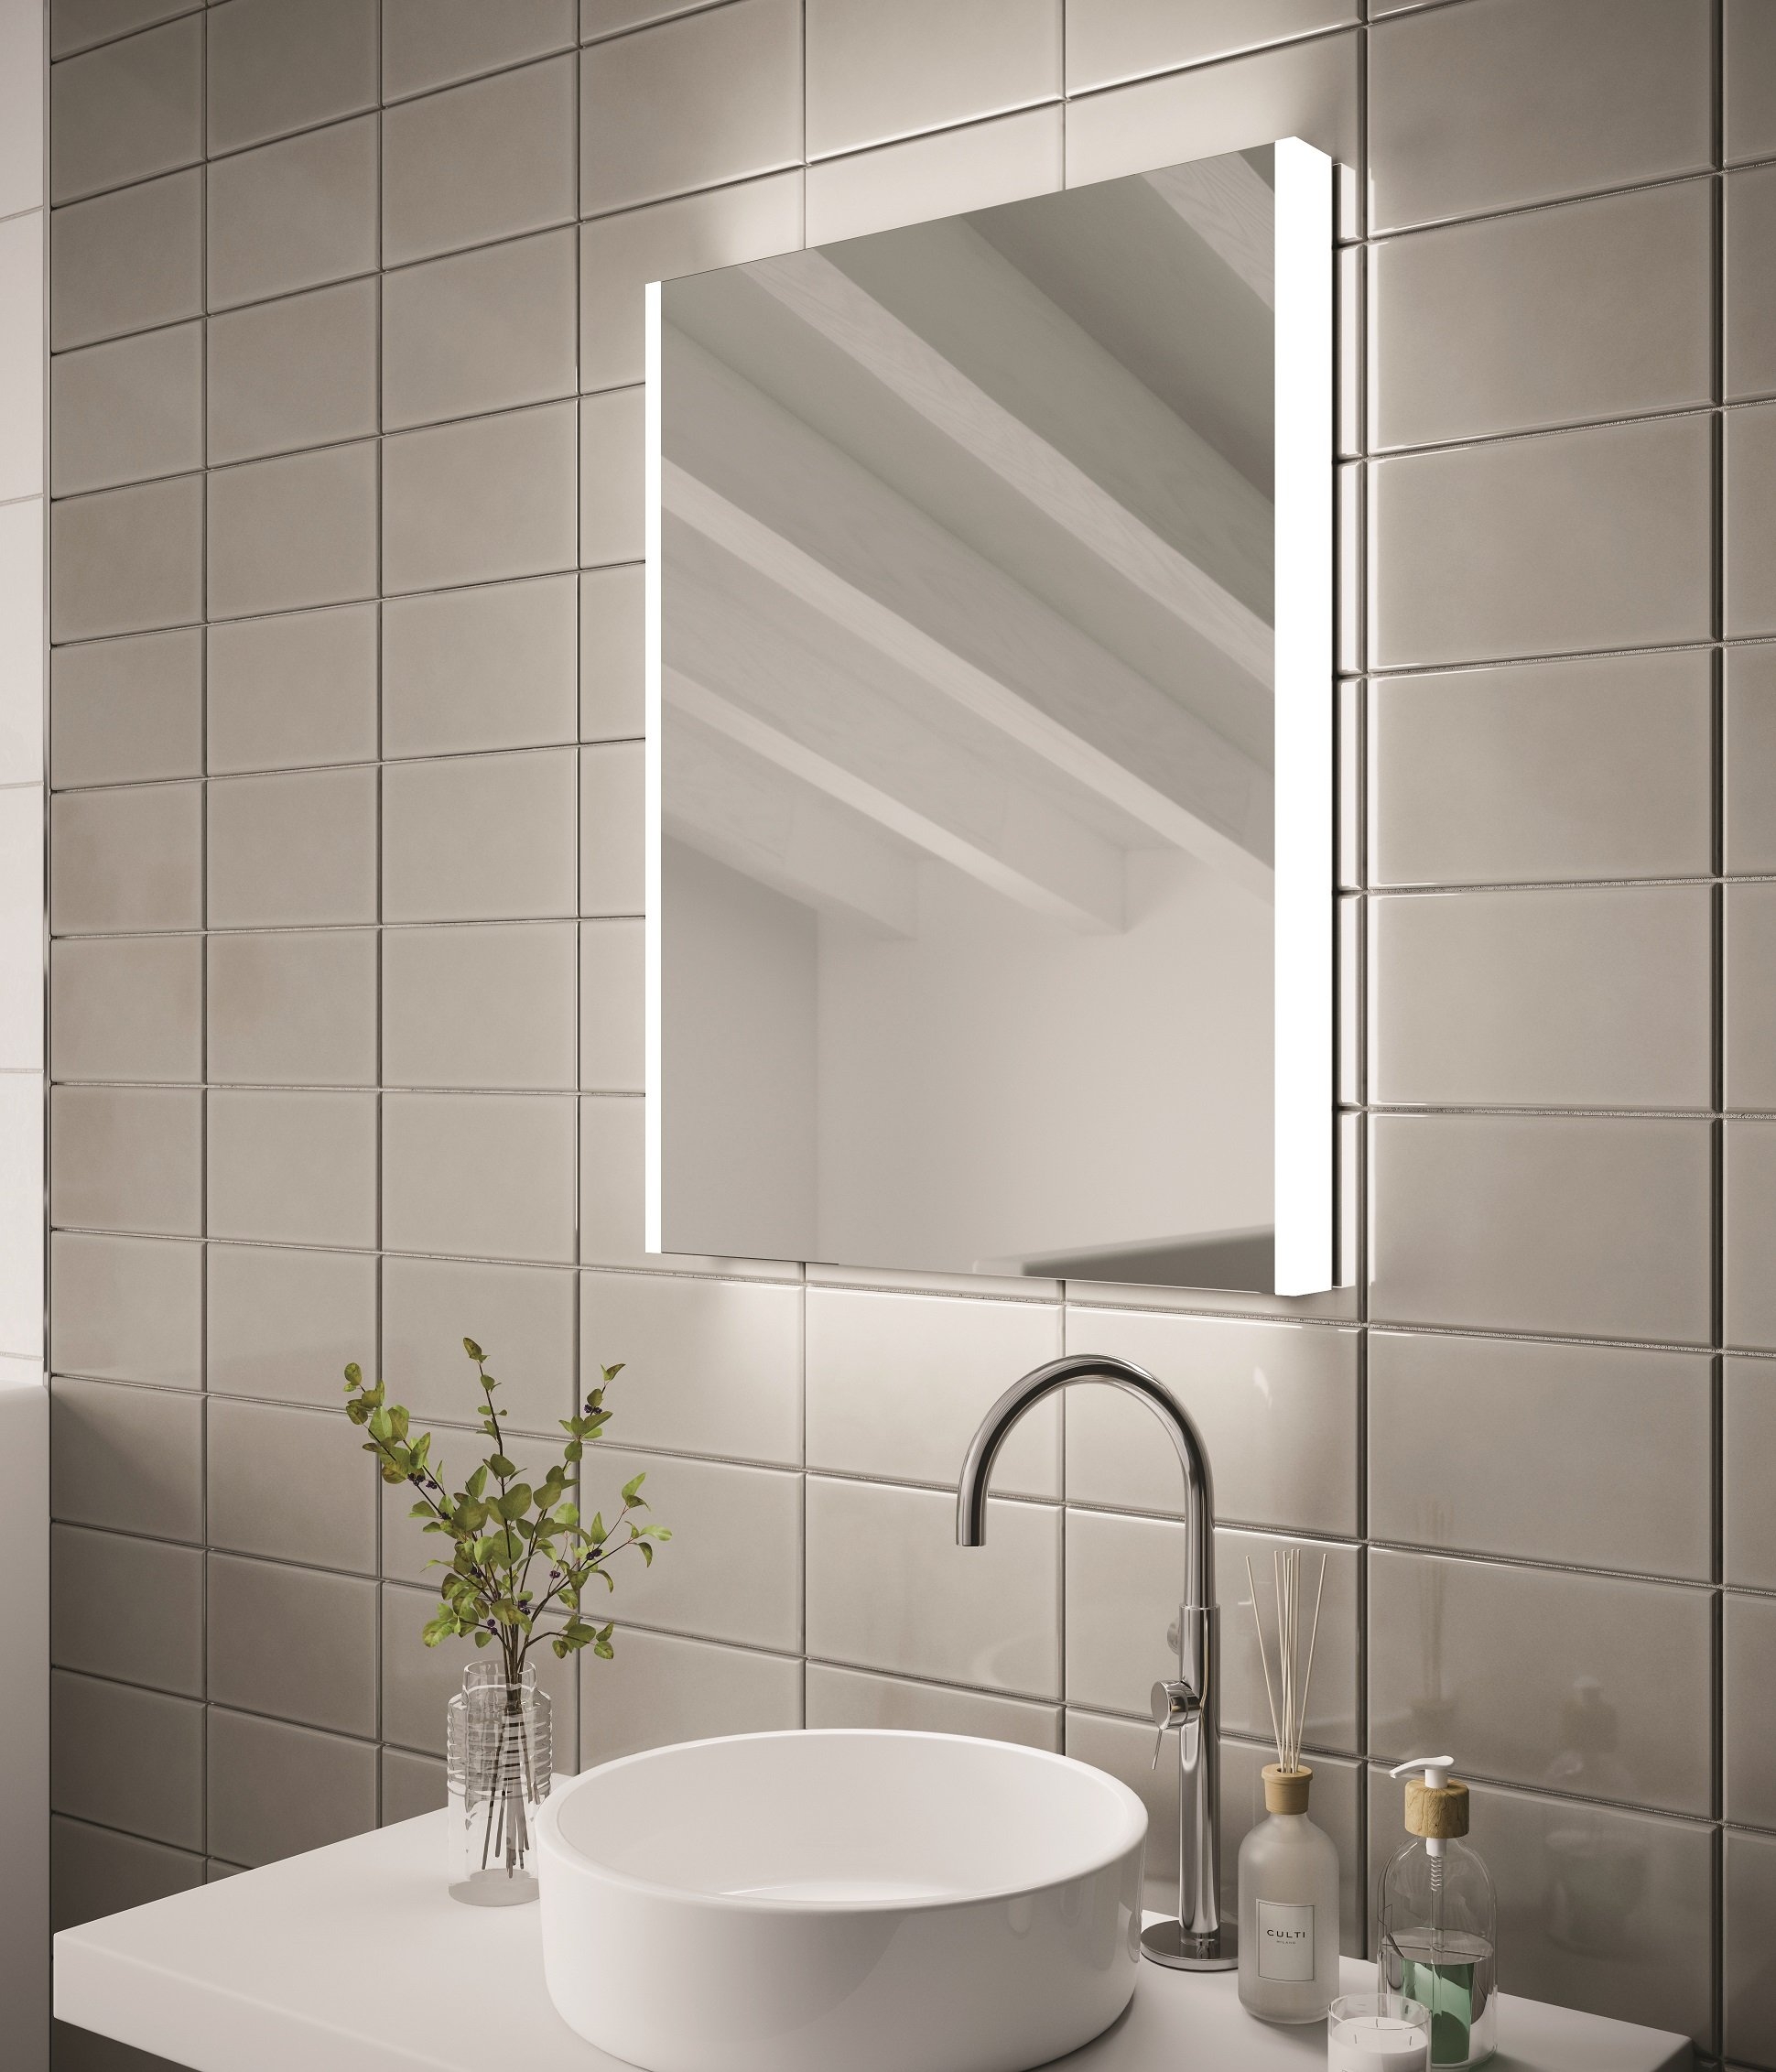 HiB Connect – Rectangular LED Illuminated Bathroom Mirror – Connect 50: H70 x W50 x D6cm – HiB LED Illuminated Bathroom Mirrors – Stylishly